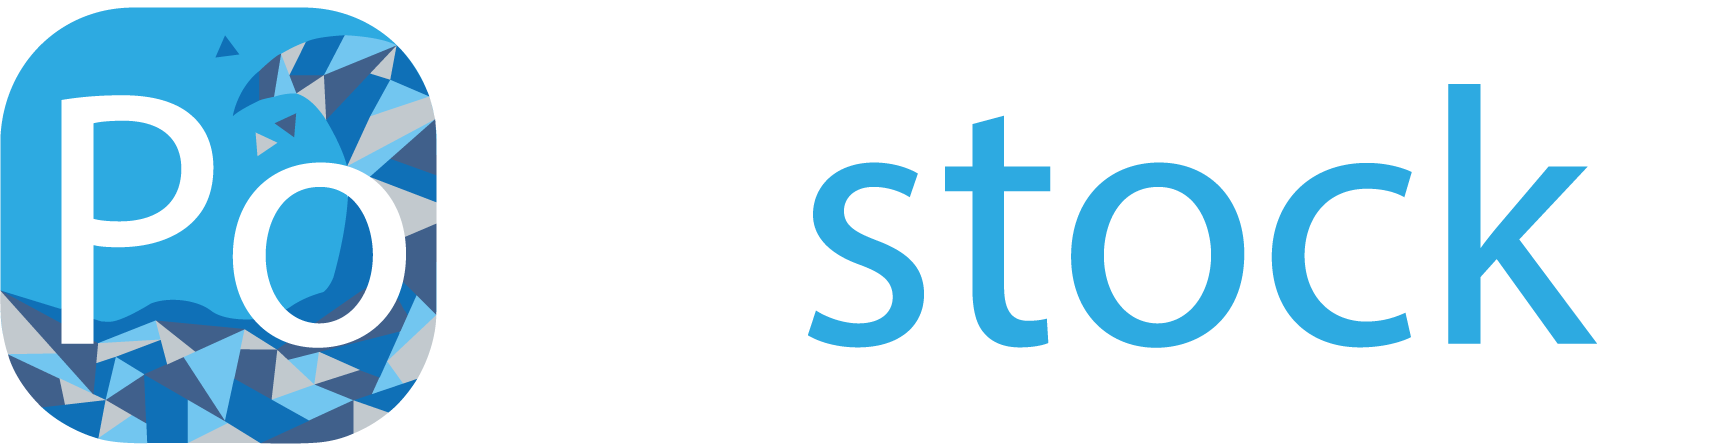 New logo Pollustock white